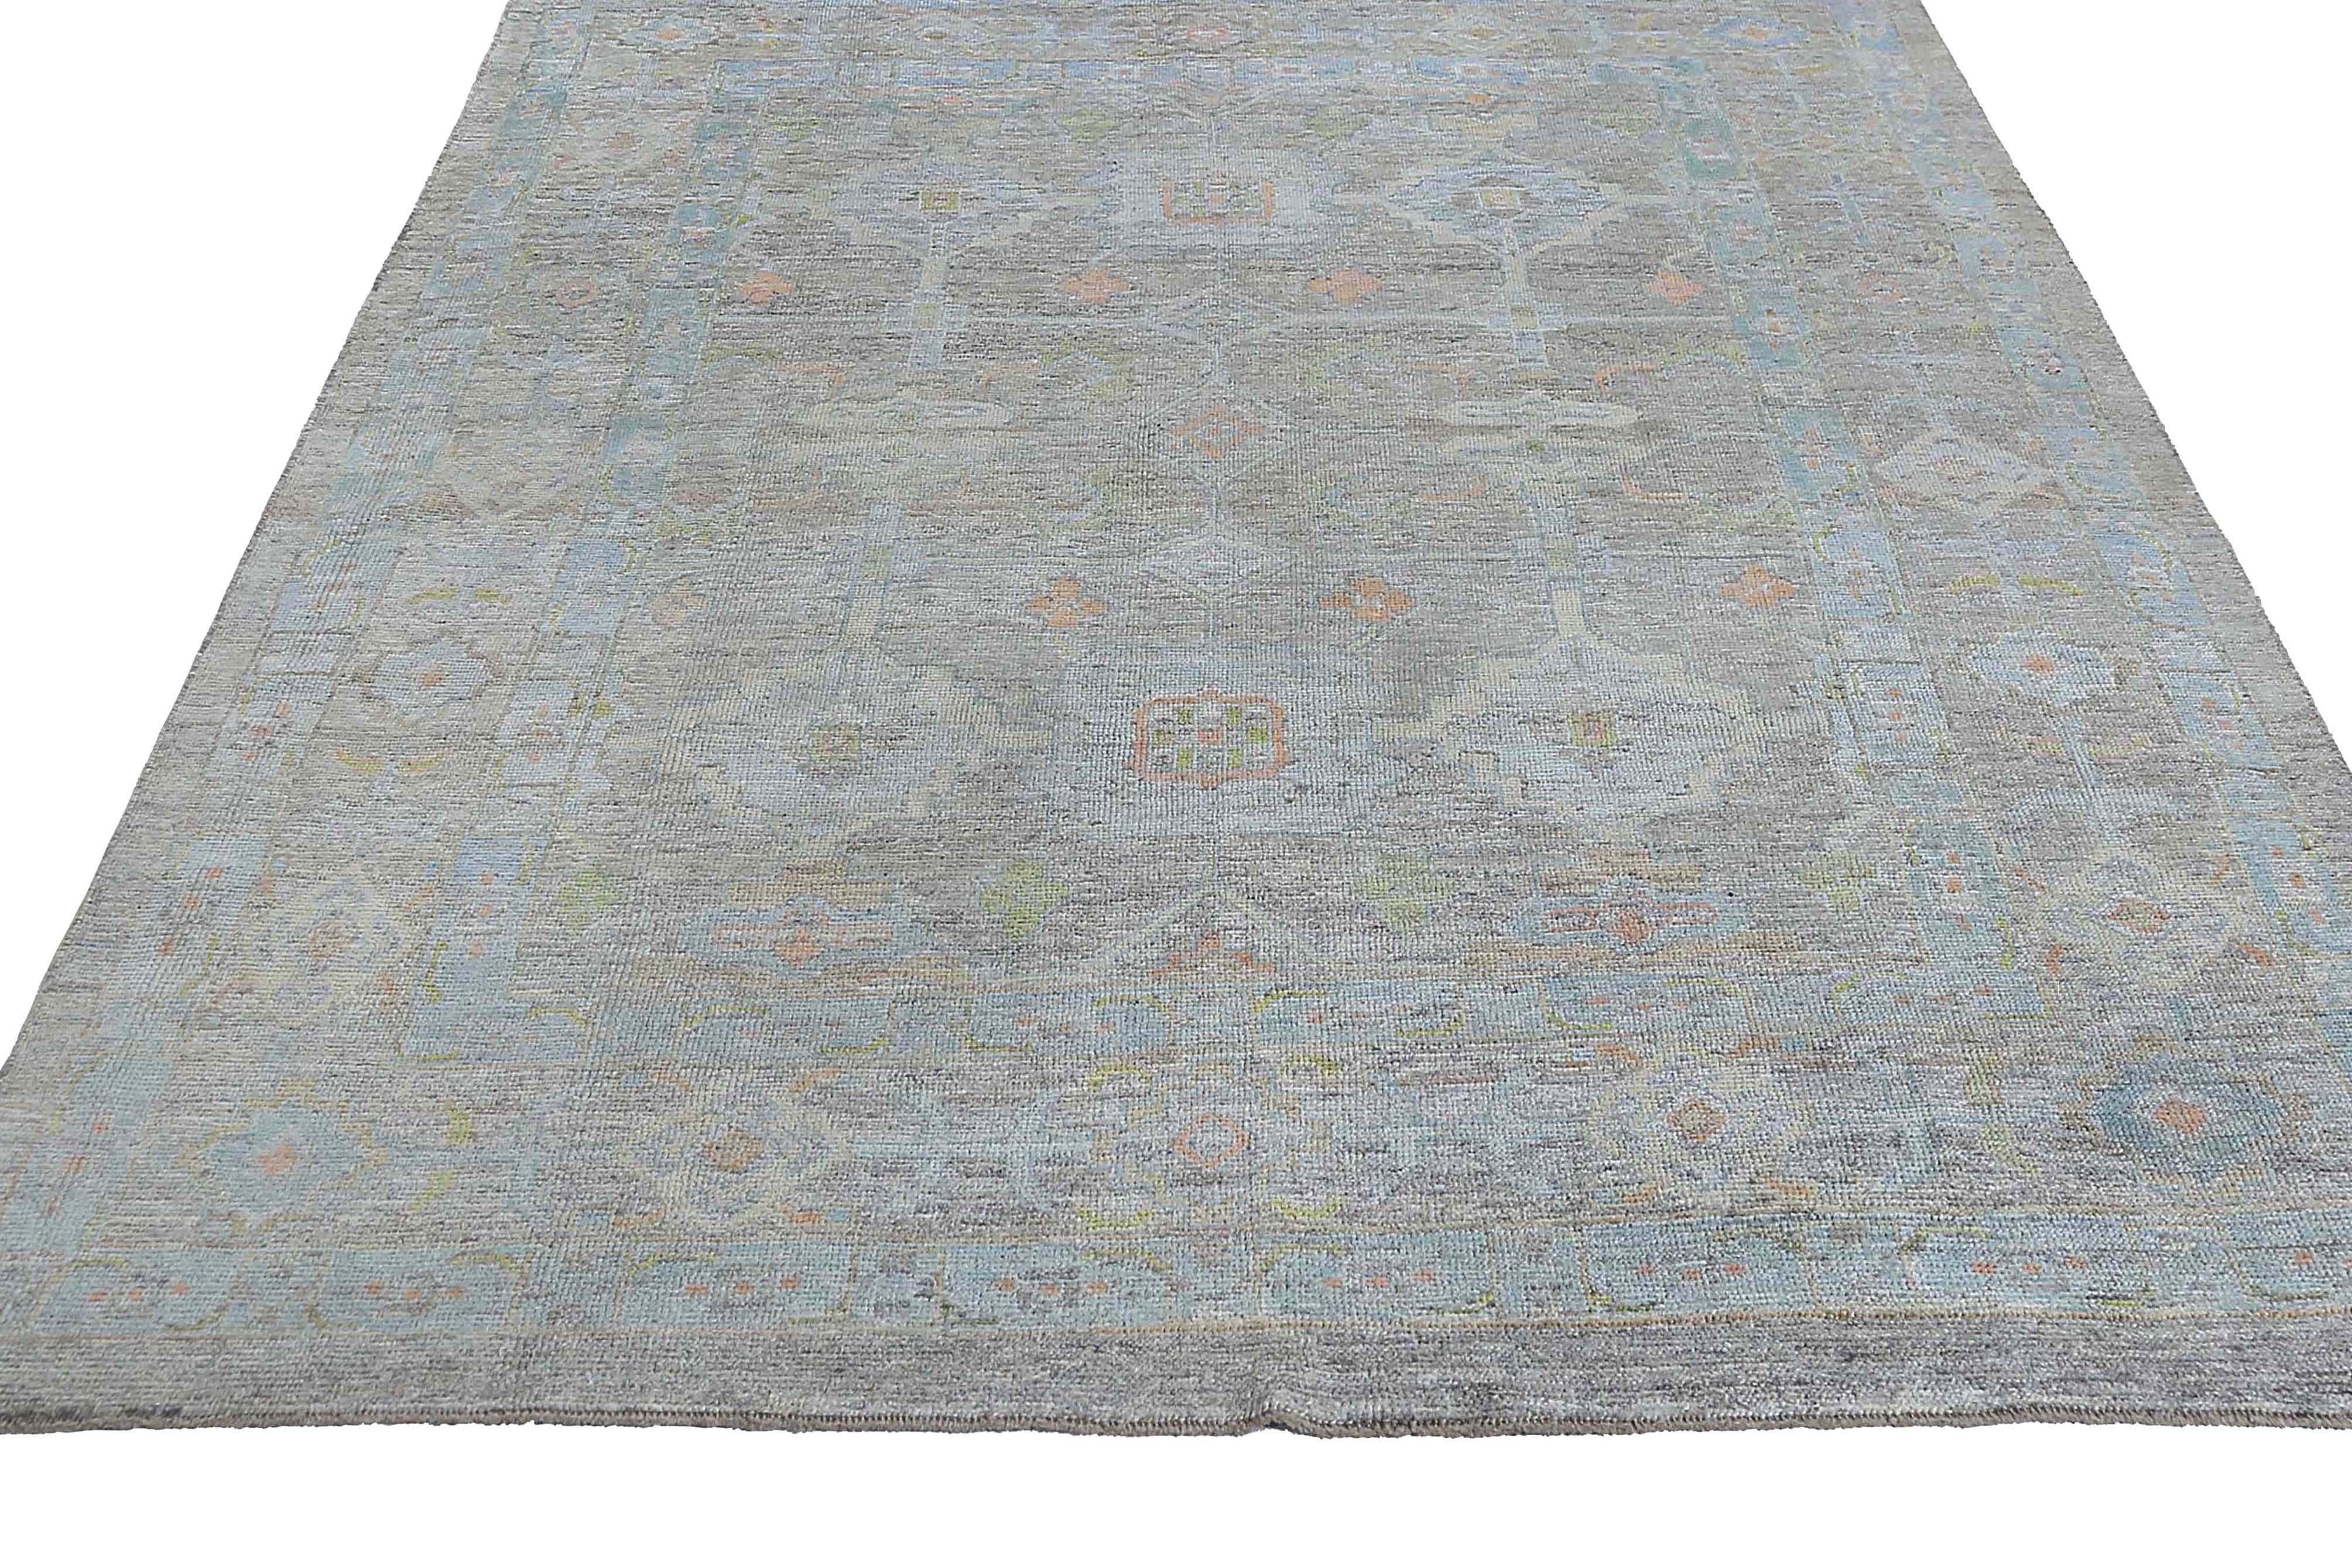 Nous vous présentons notre magnifique tapis Oushak turc dans un format époustouflant de 8'6'' x 11'6'' qui ne manquera pas d'ajouter une touche d'élégance à n'importe quelle pièce. Fabriqué dans la tradition de la région d'Oushak en Turquie, ce